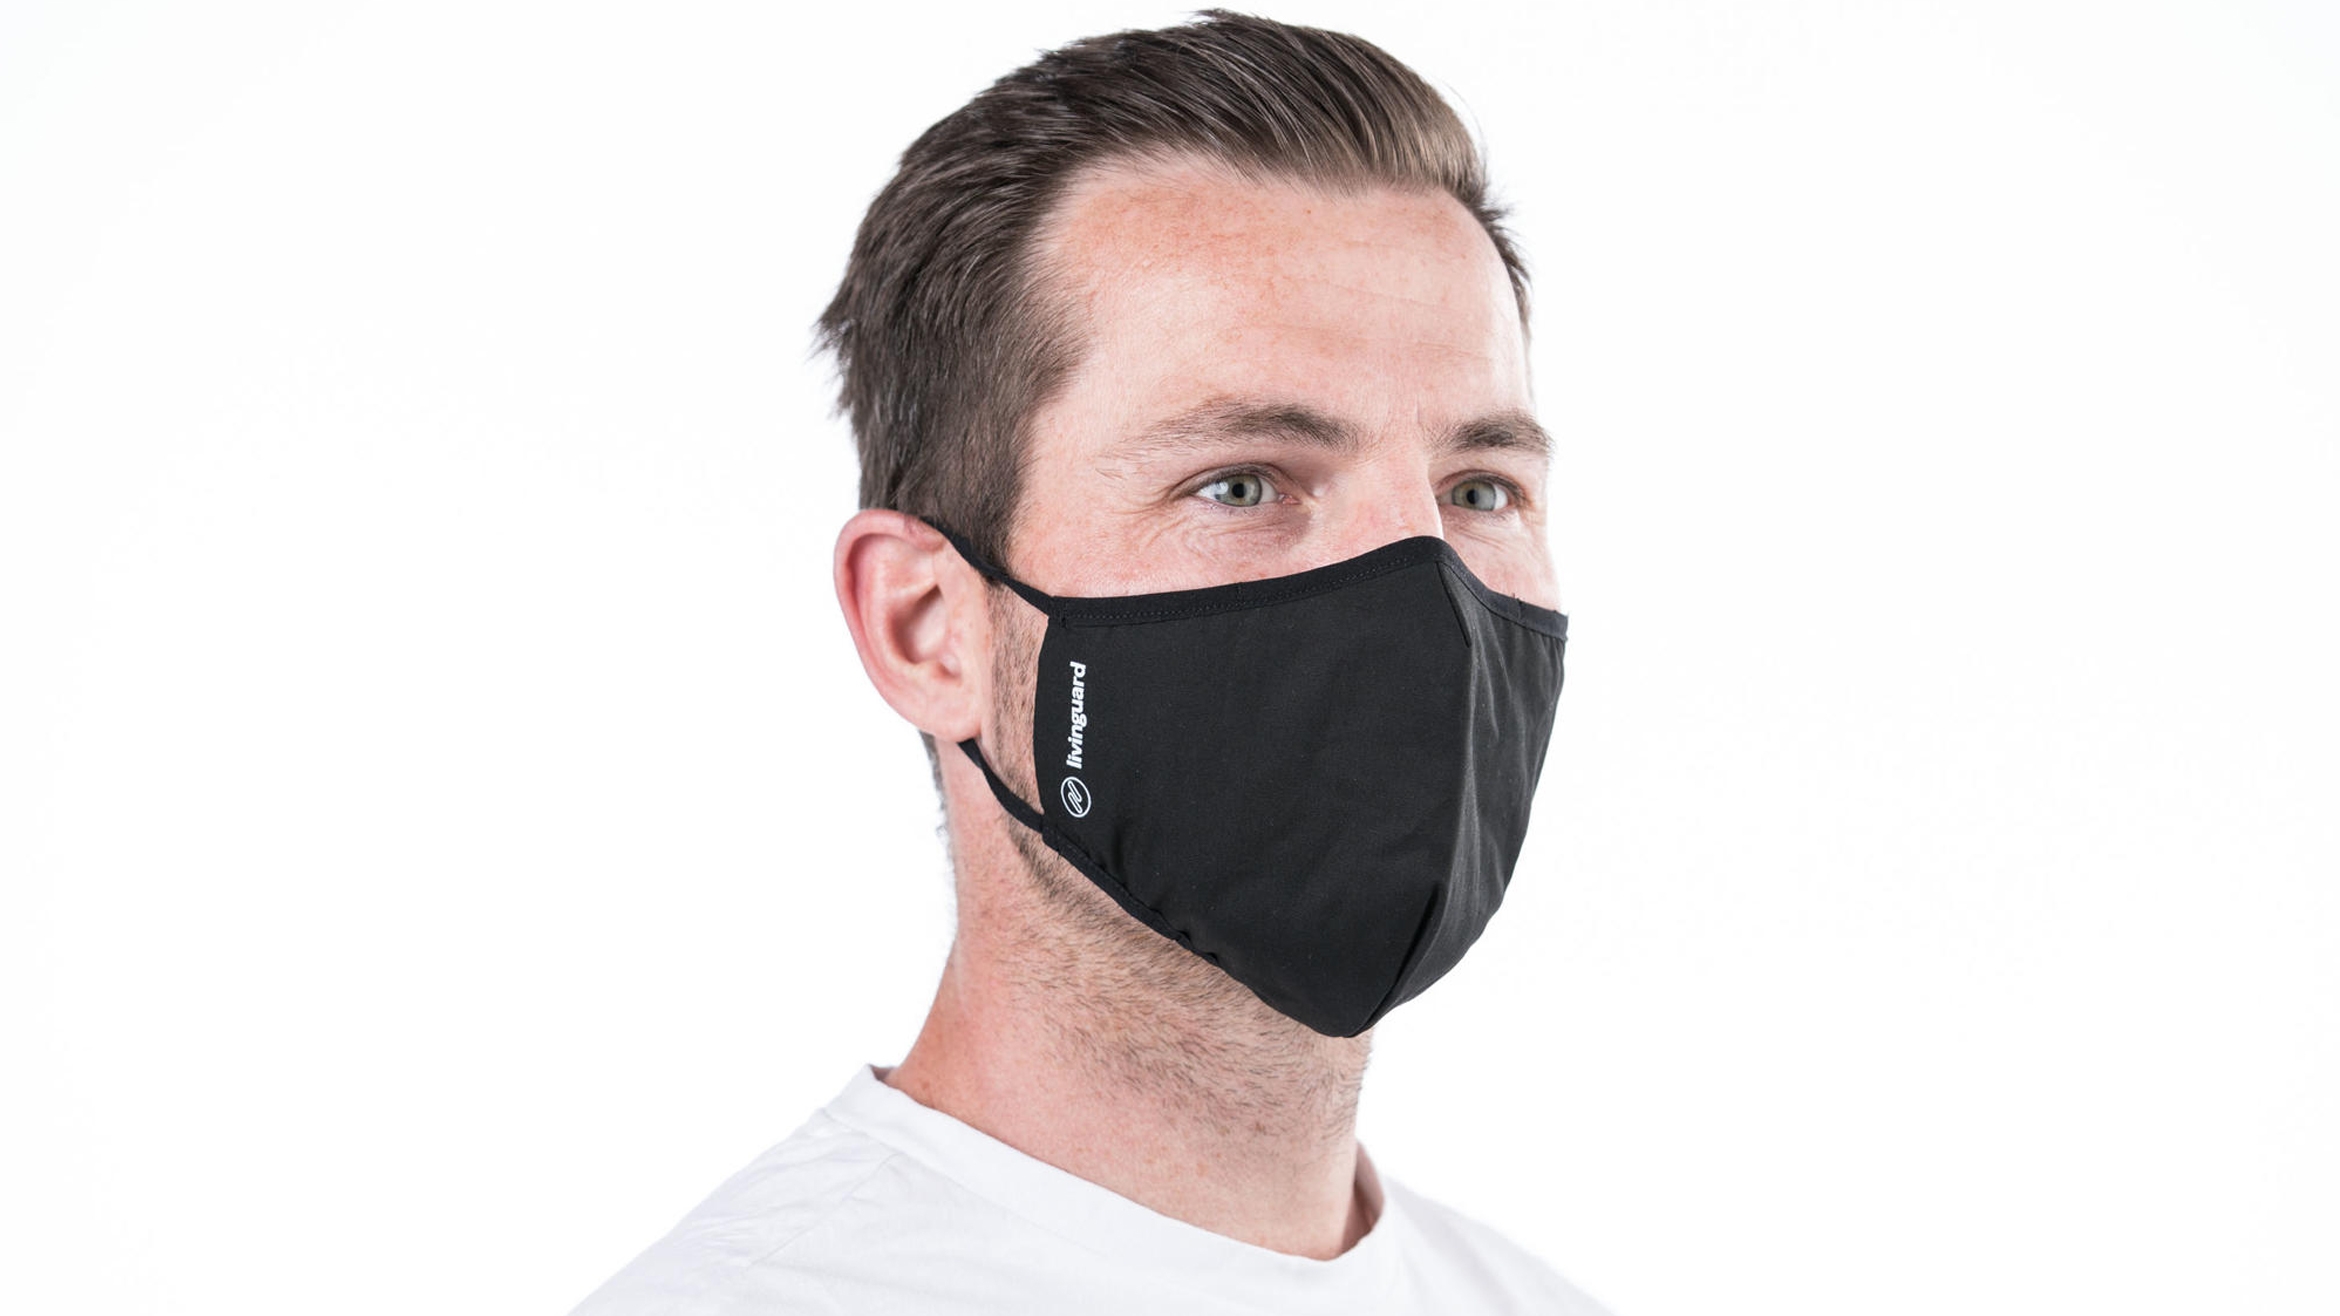 Livinguard stellt Gesichtsmasken aus Textilien her, die sich zur direkten Inaktivierung von SARS-CoV-2 Viren eignen –